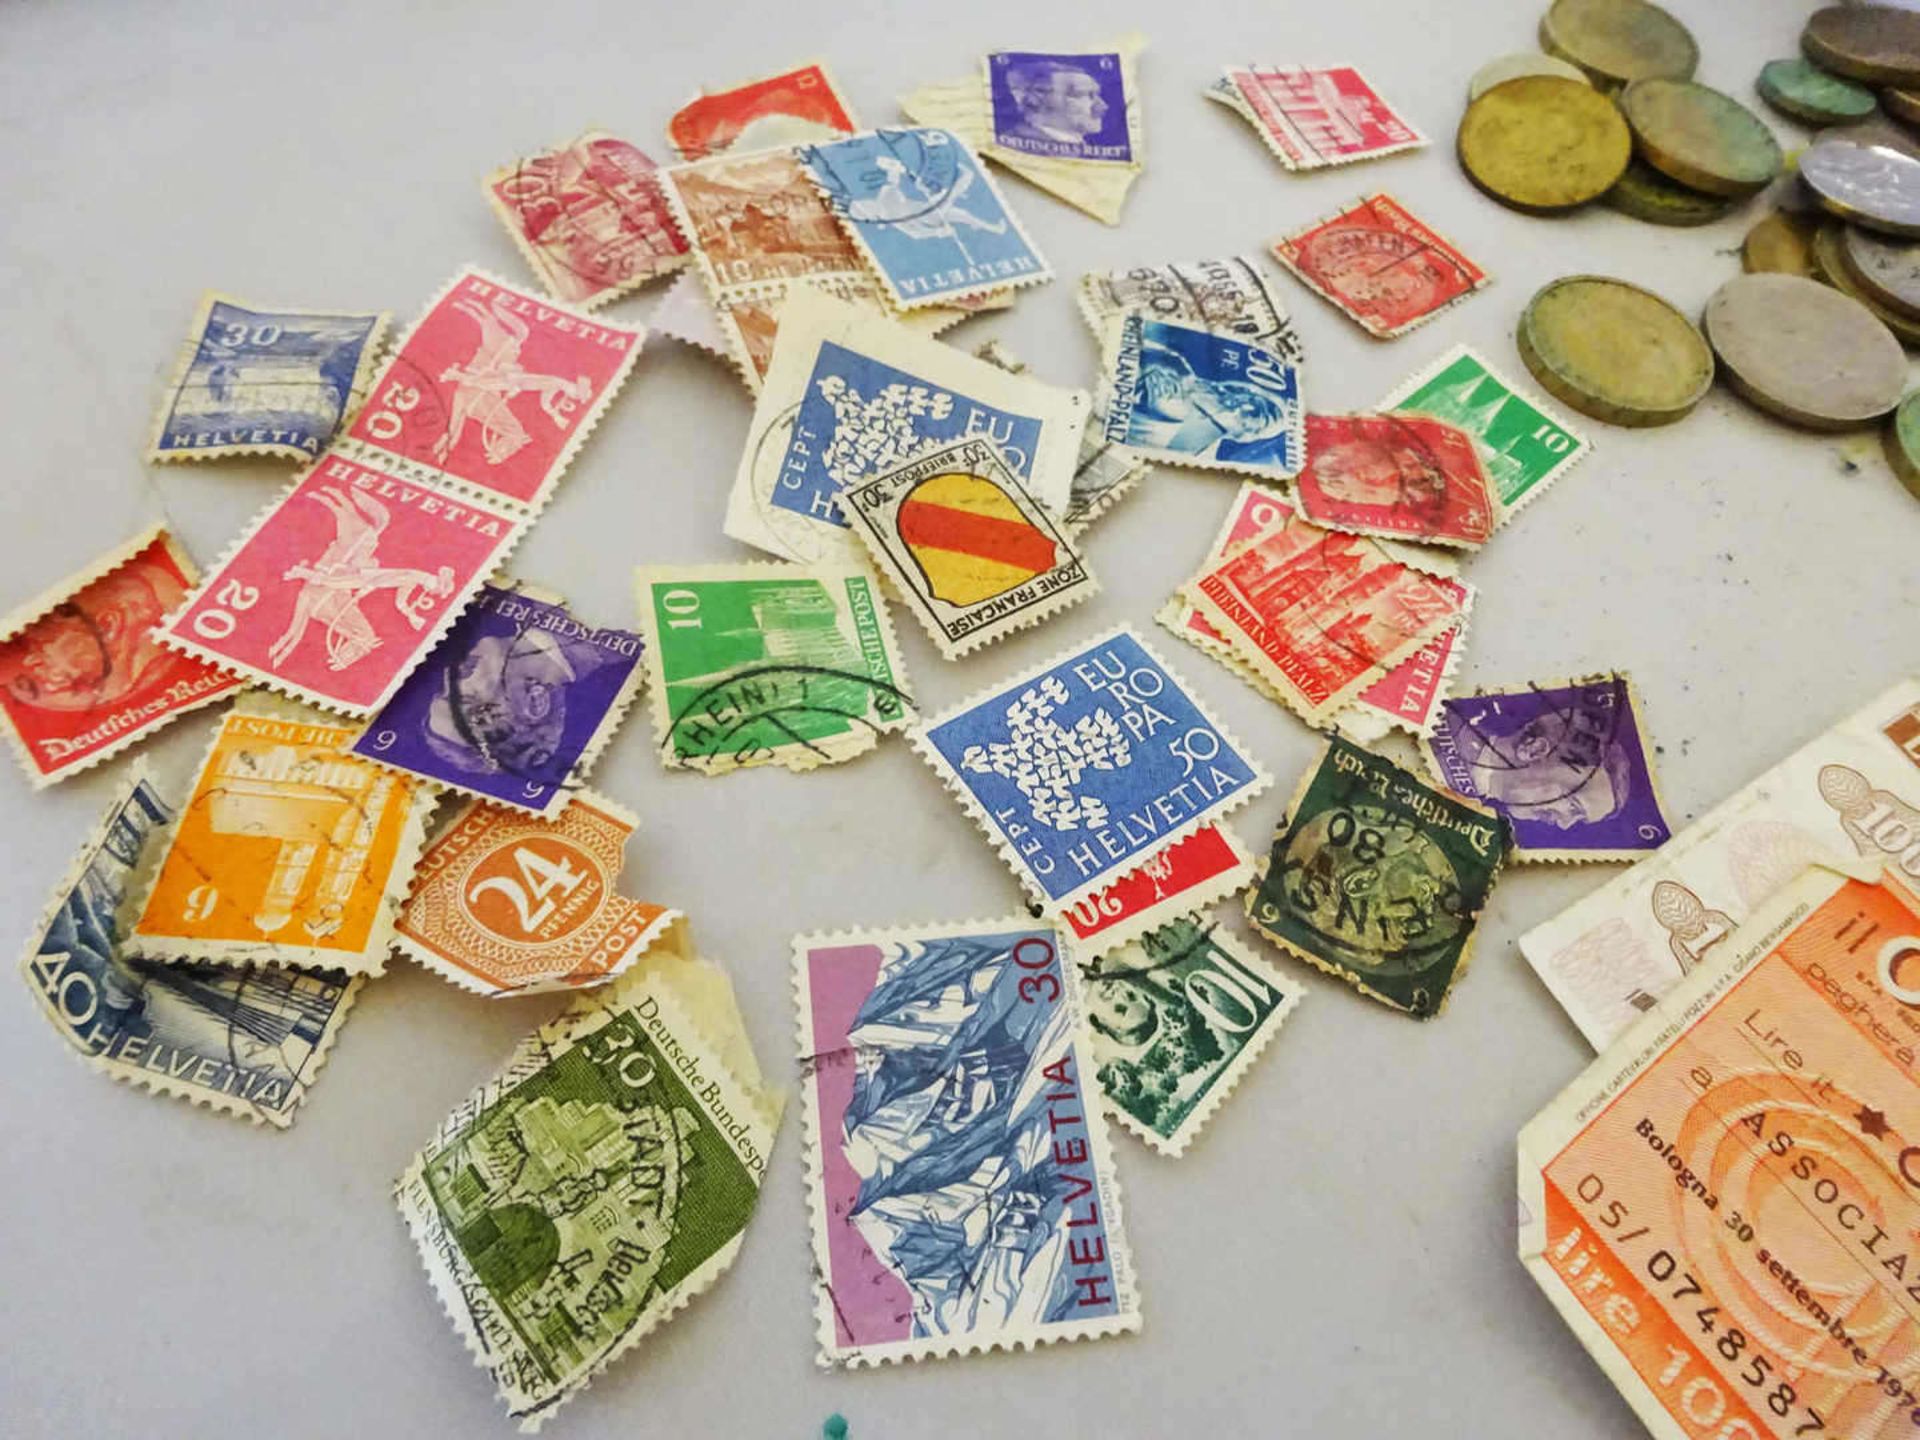 Lot Banknoten, Münzen und Briefmarken aus Haushaltsauflösung. Banknoten Italien und Belgien. Bitte - Bild 3 aus 3